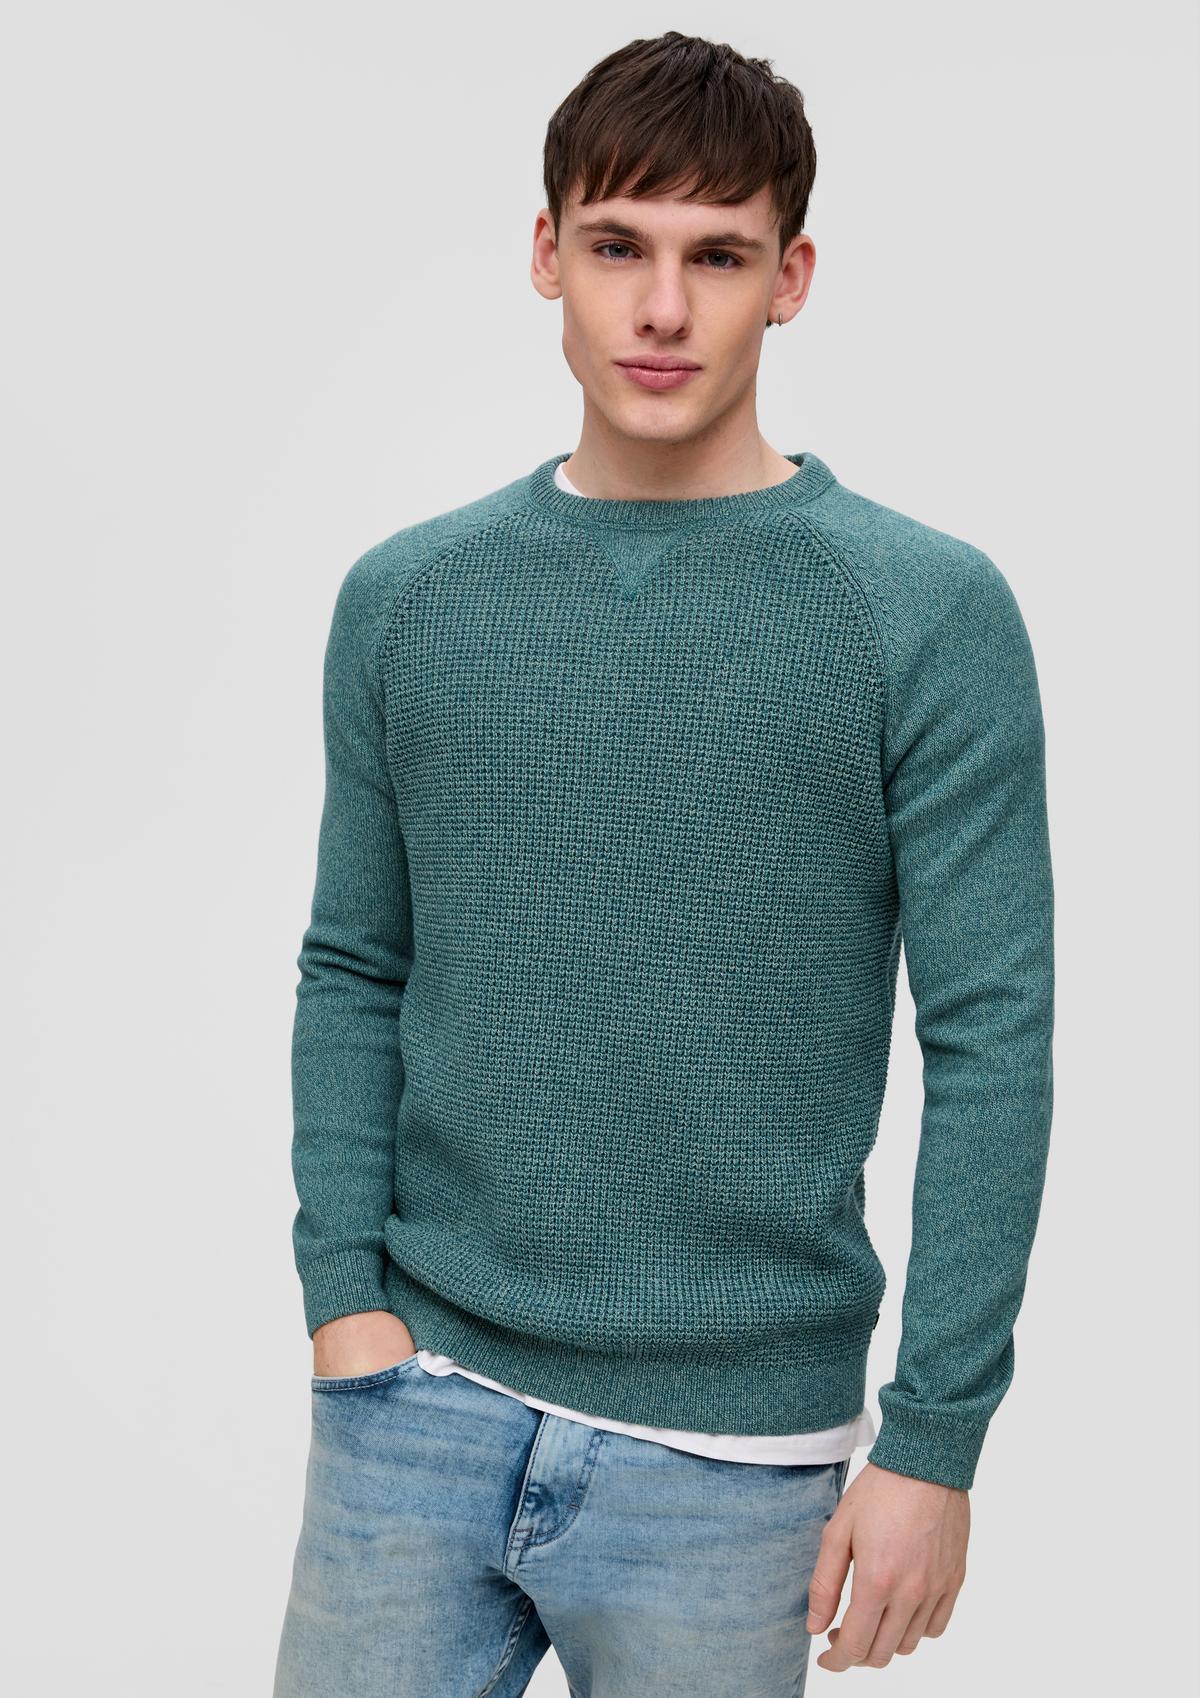 kaufen online Herren-Pullover